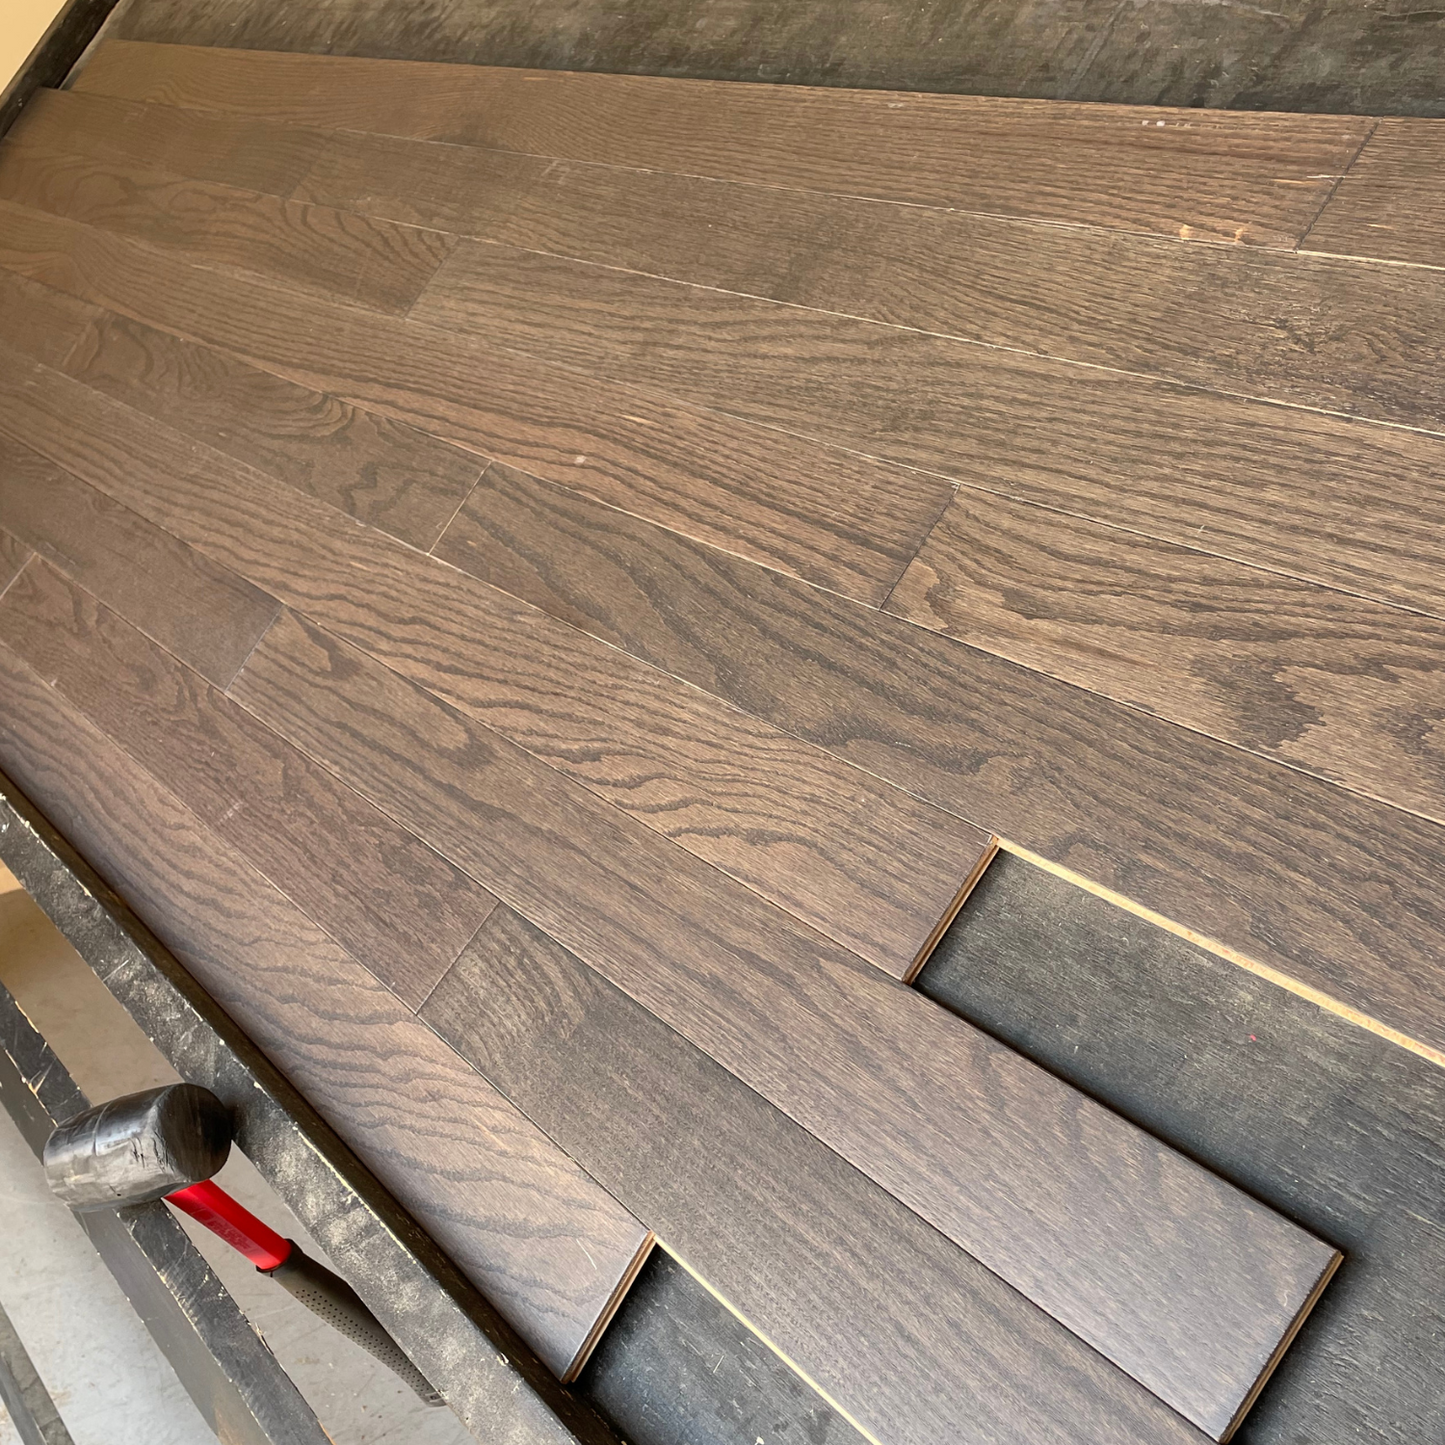 3 1/4" x 1/2" Engineered Oak Urban Gray Hardwood Flooring